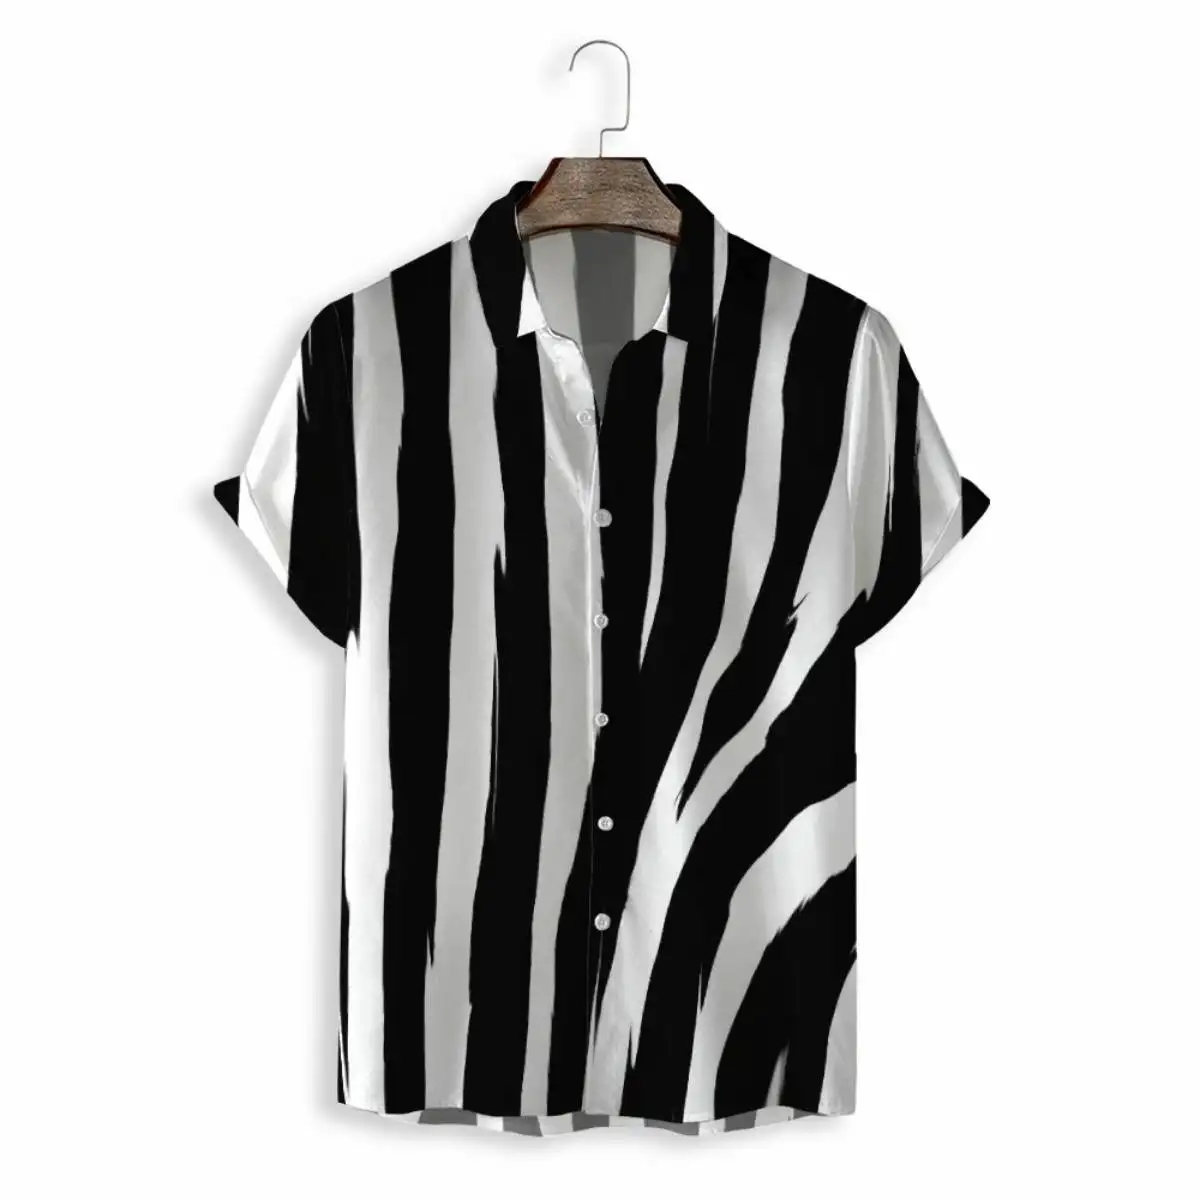 Summer Men's Casual Short Sleeve Full Print Shirt Black White Stripe Men Shirt Chemise Homme